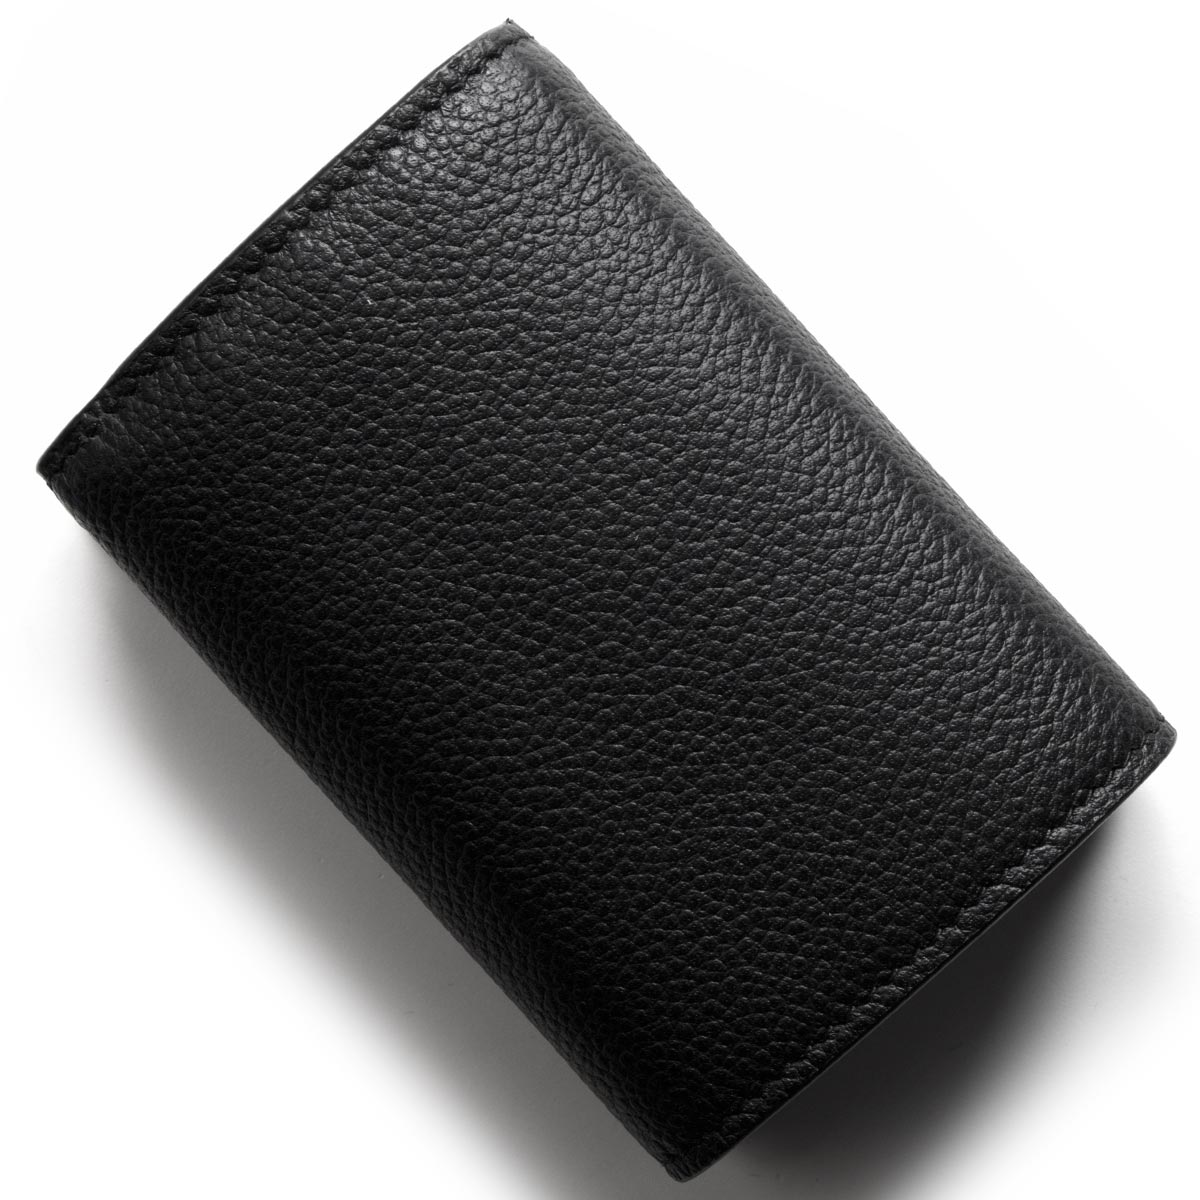 サンローランパリ イヴサンローラン 三つ折り財布 ミニ財布 財布 レディース ブラック B680n 1000 Saint Laurent Paris ブランド時計専門店ブルークウォッチカンパニー